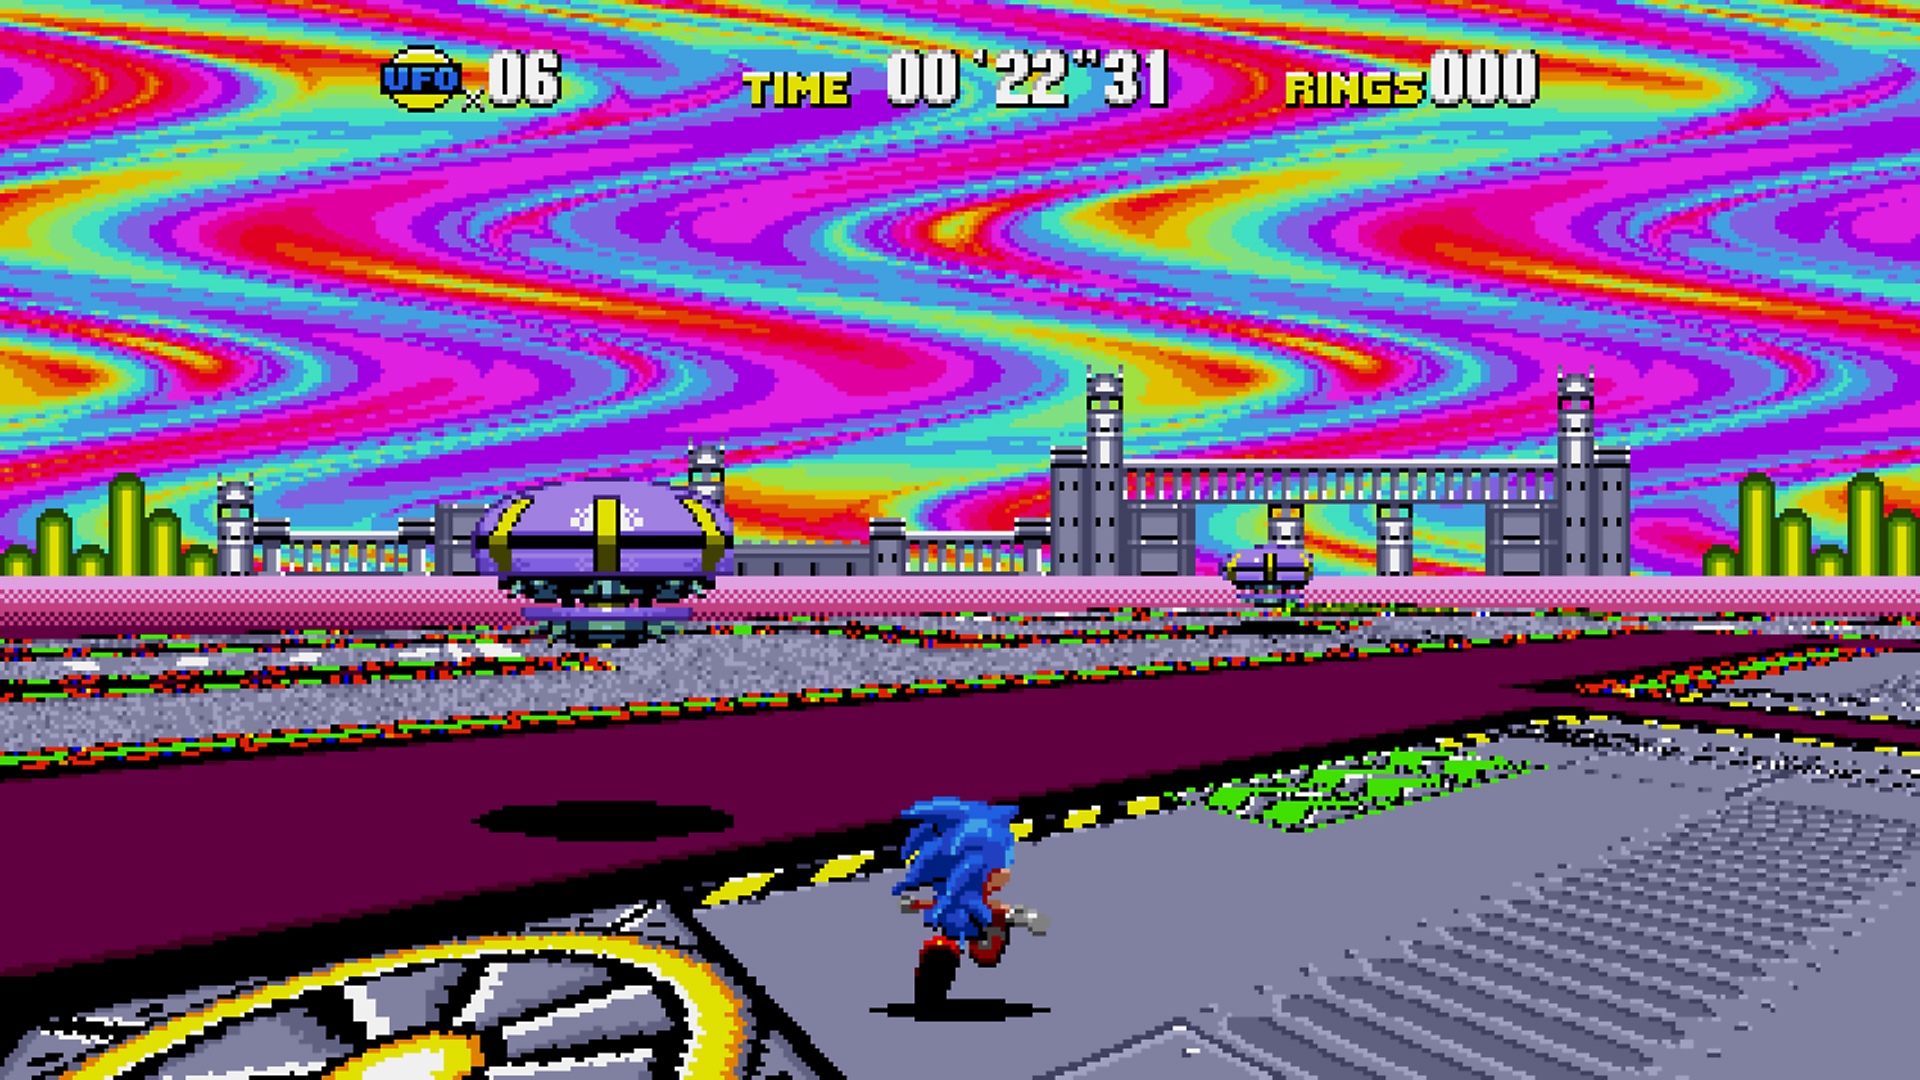 Capture d'écran de Sonic Origins montrant Sonic courant dans un niveau avec un ciel couleur arc-en-ciel